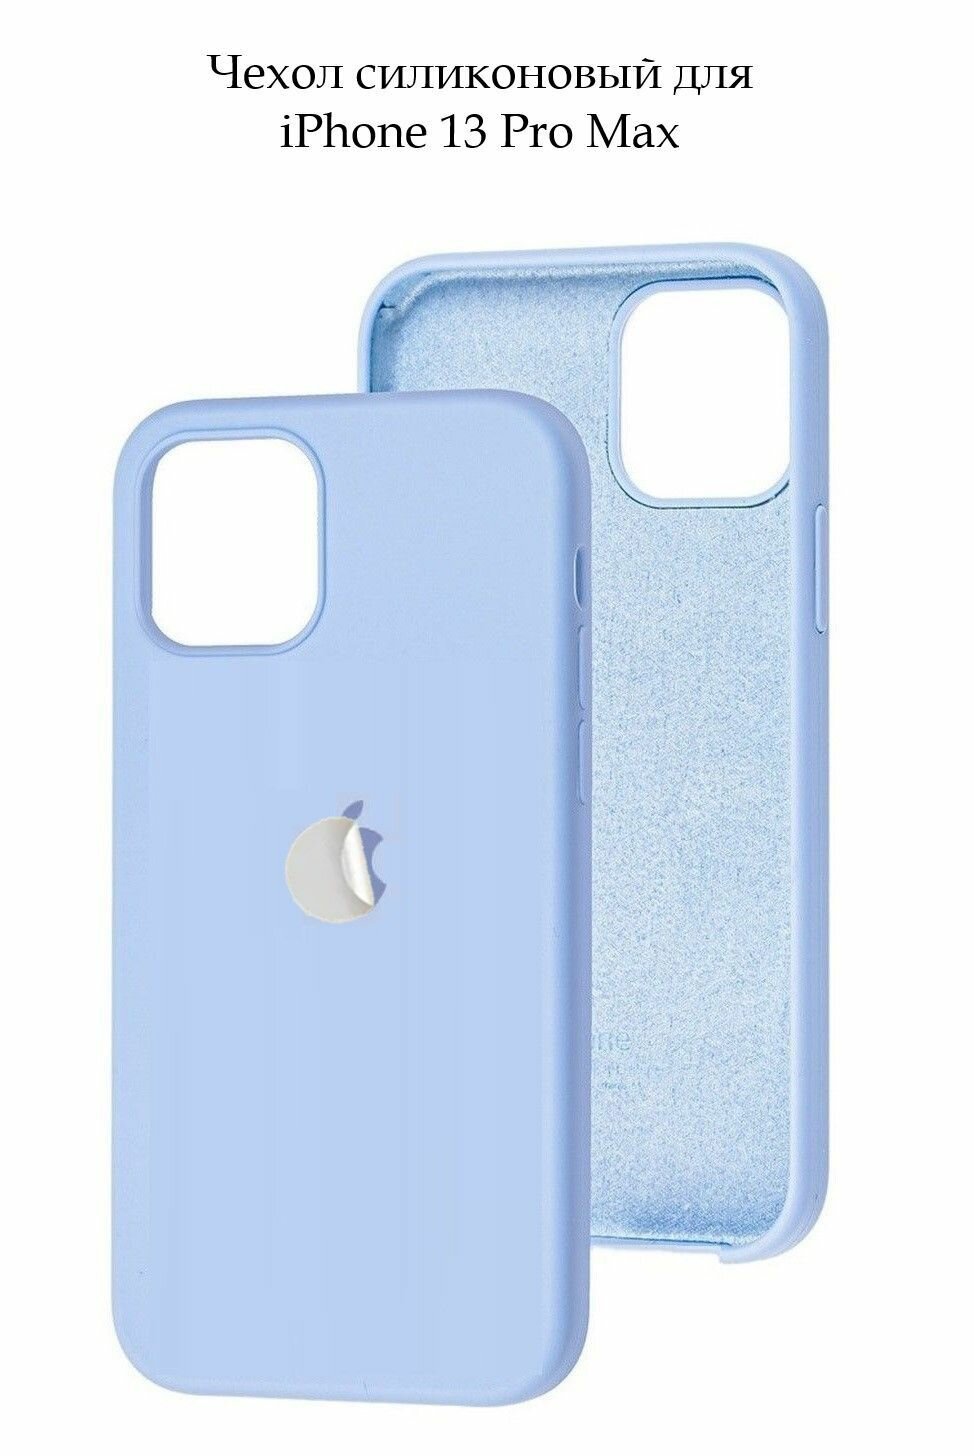 Силиконовый чехол с эффектом Soft Touch для iPhone 13 Pro Max с логотипом/ Айфон 13 Про Макс, цвет небесно-голубой